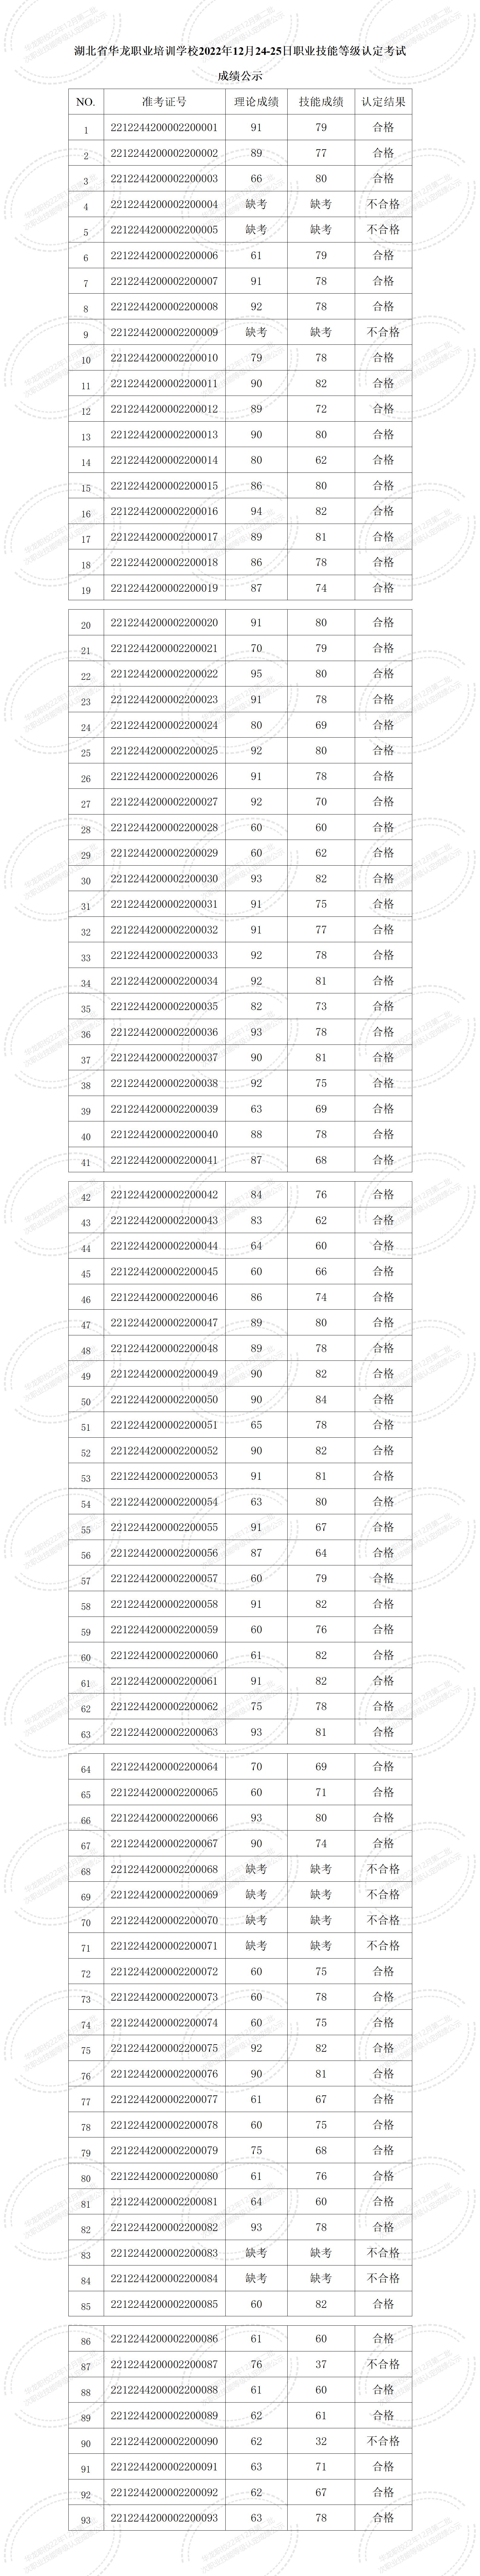 湖北省华龙职业培训学校2022年12月职业技能等级认定考试成绩公示 (1)_01